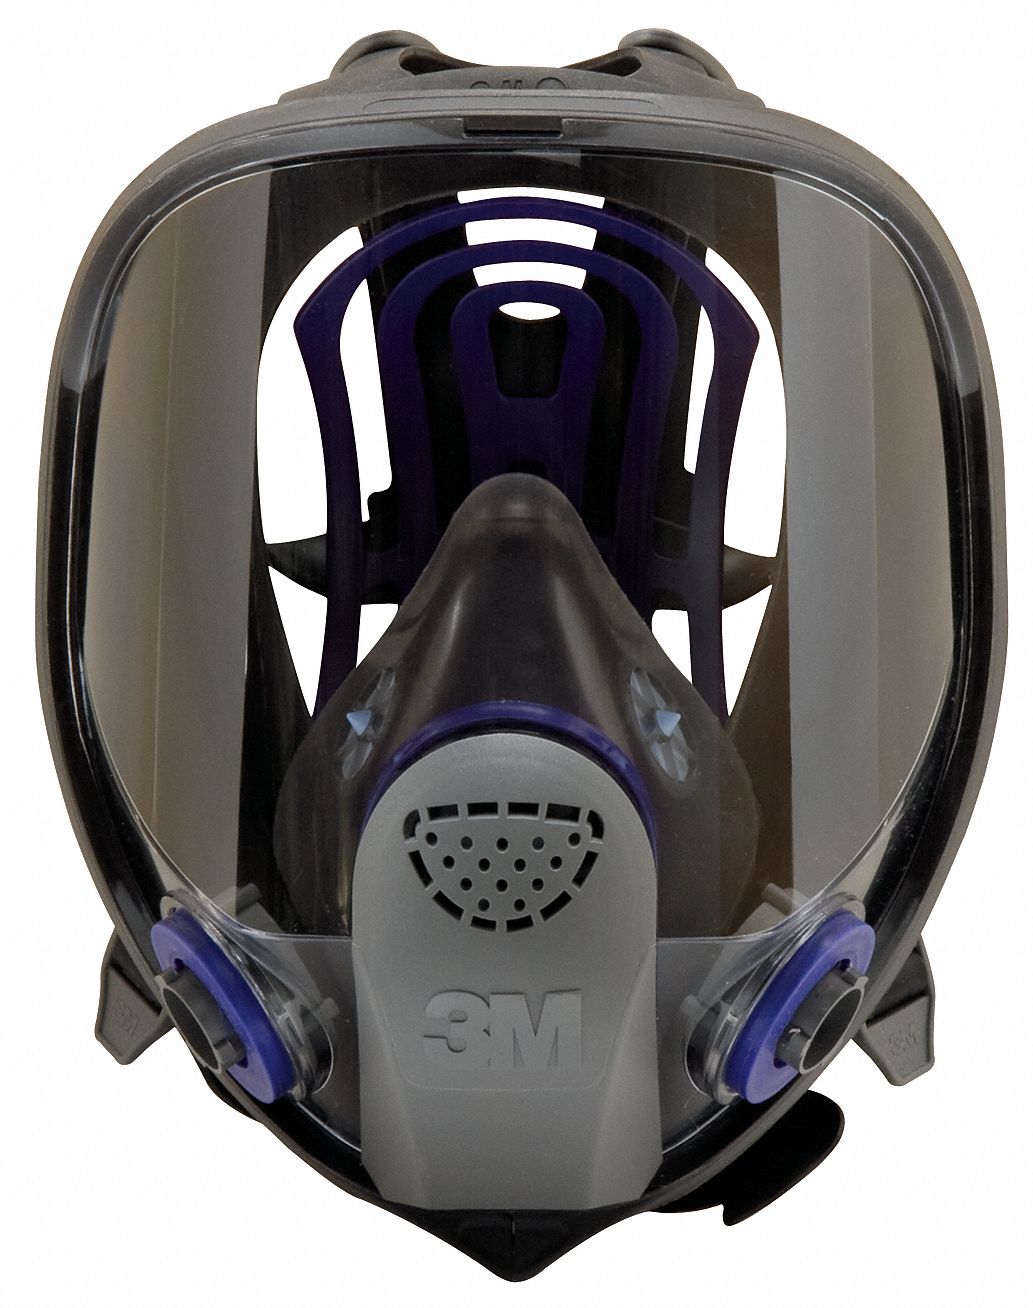 3m full face mask respirator